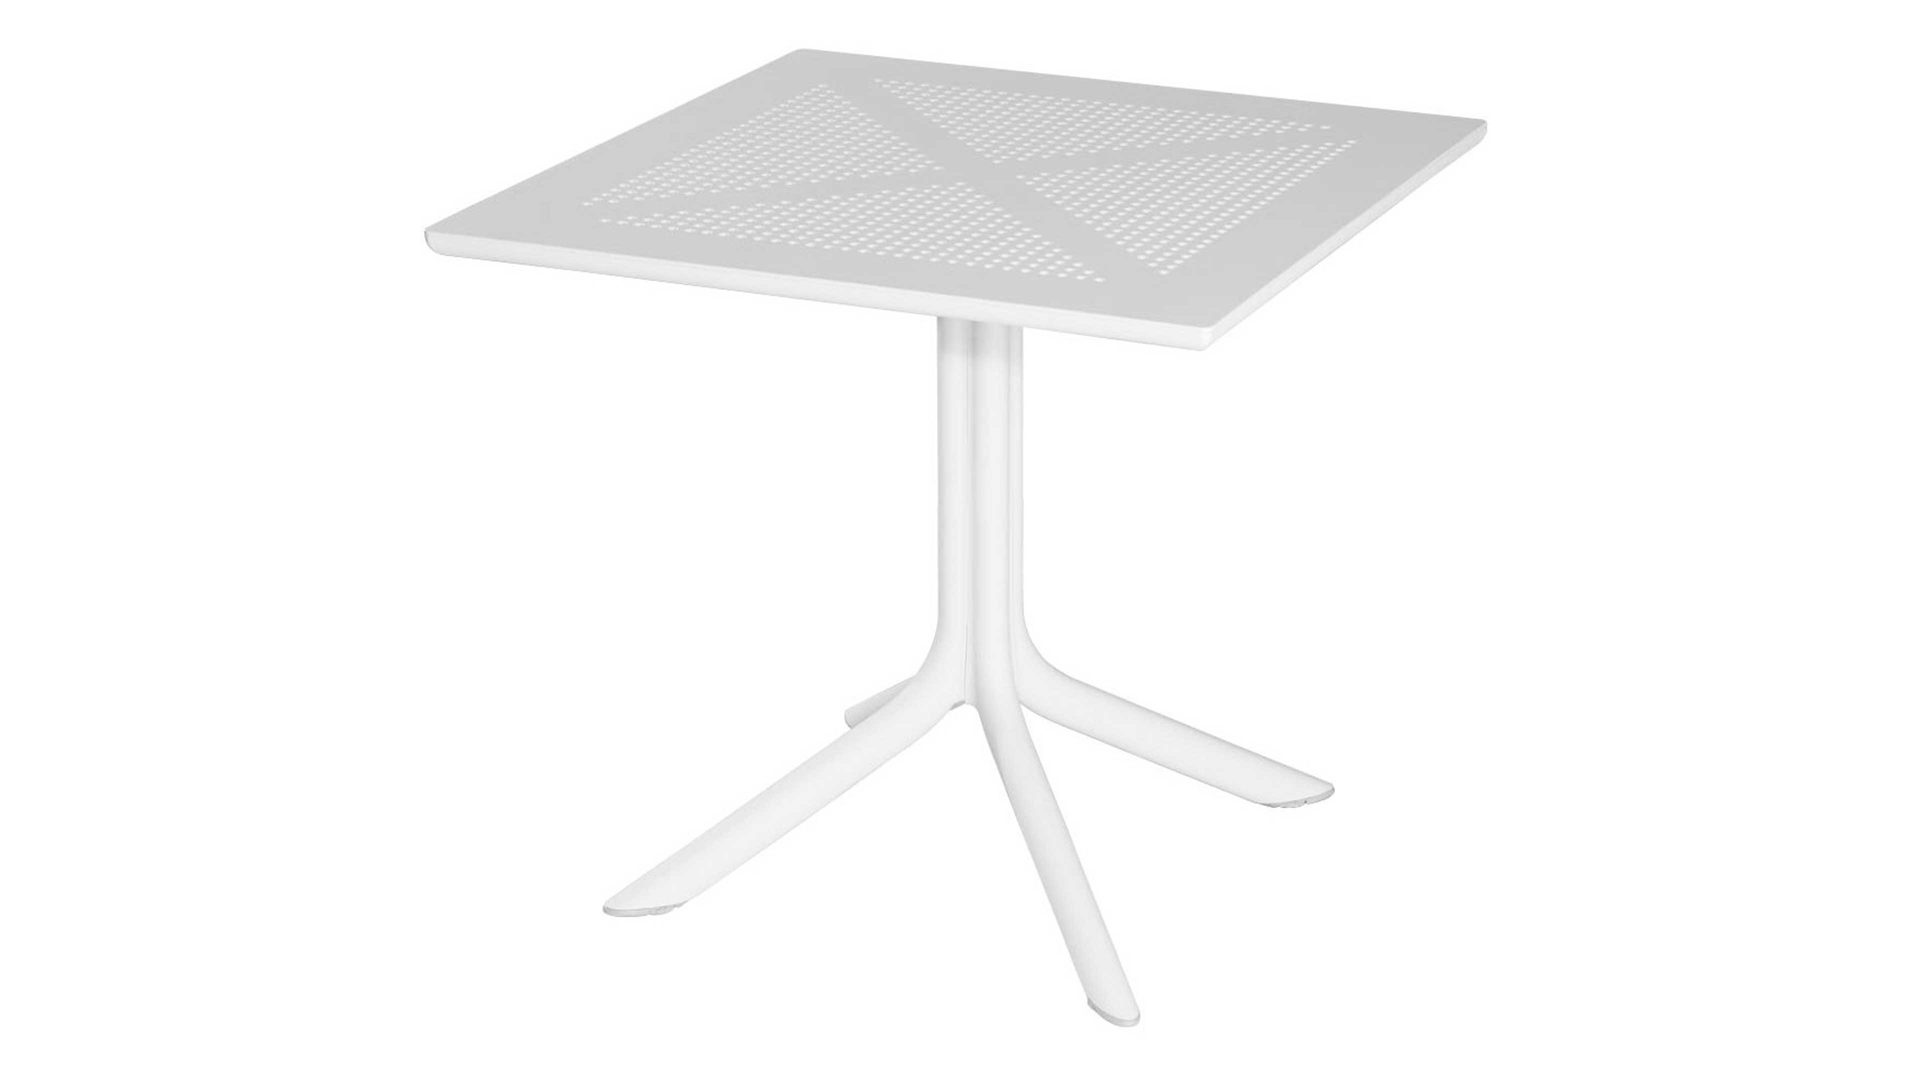 Gartentisch Best freizeitmöbel aus Kunststoff in Weiß BEST FREIZEITMÖBEL Bistro-Tisch Ohio weißer Fiberglas-Kunststoff - ca. 80 x 80 cm